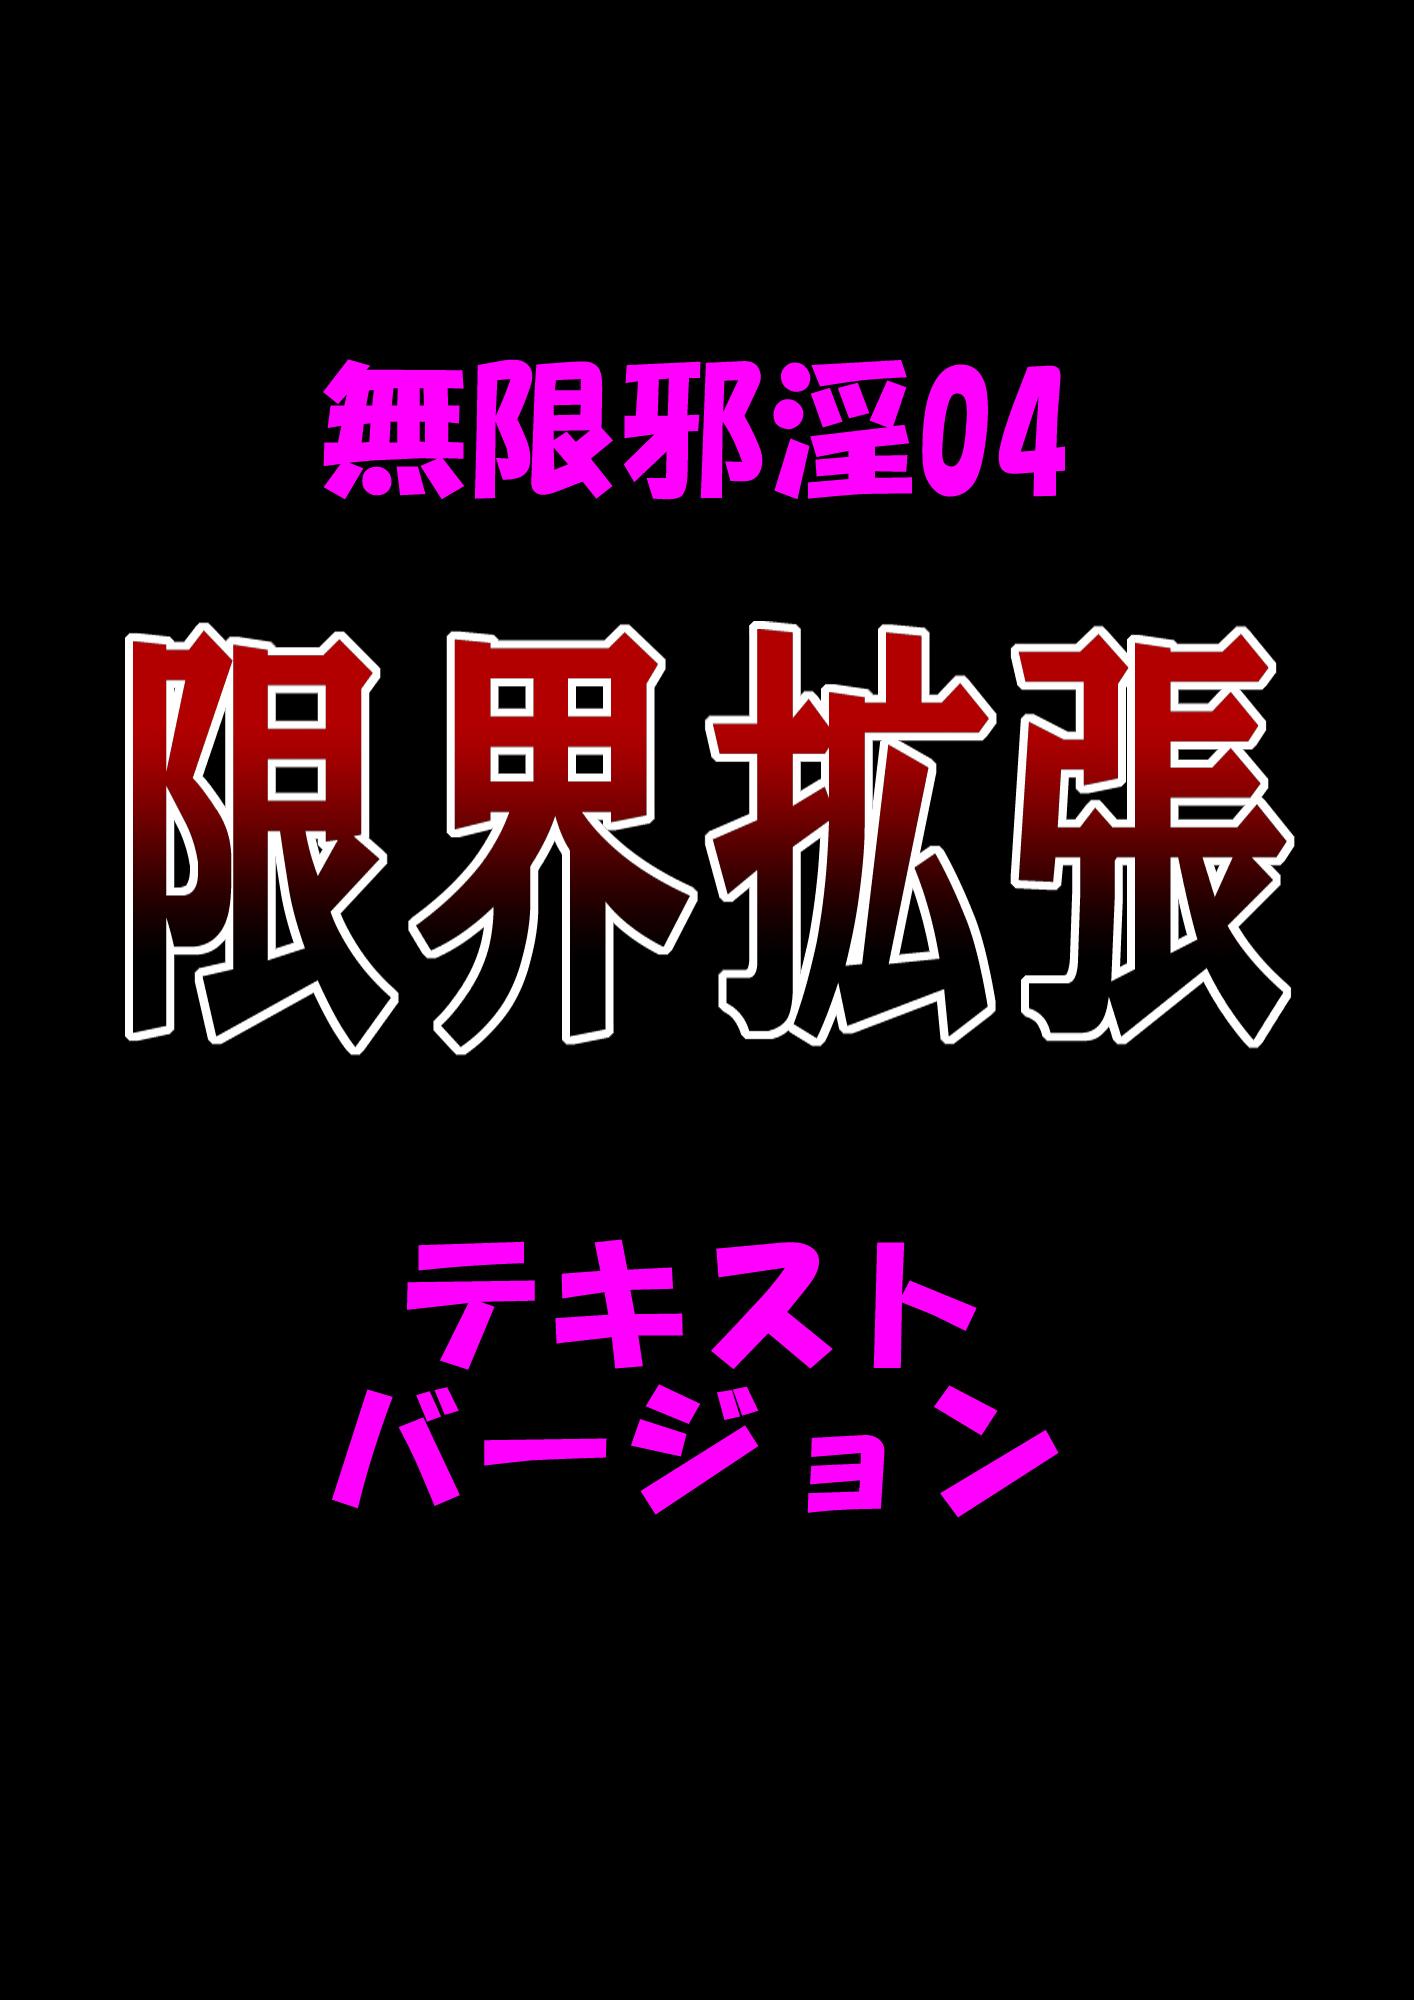 Mugenjain 04 "Genkai Kakuchou" 40